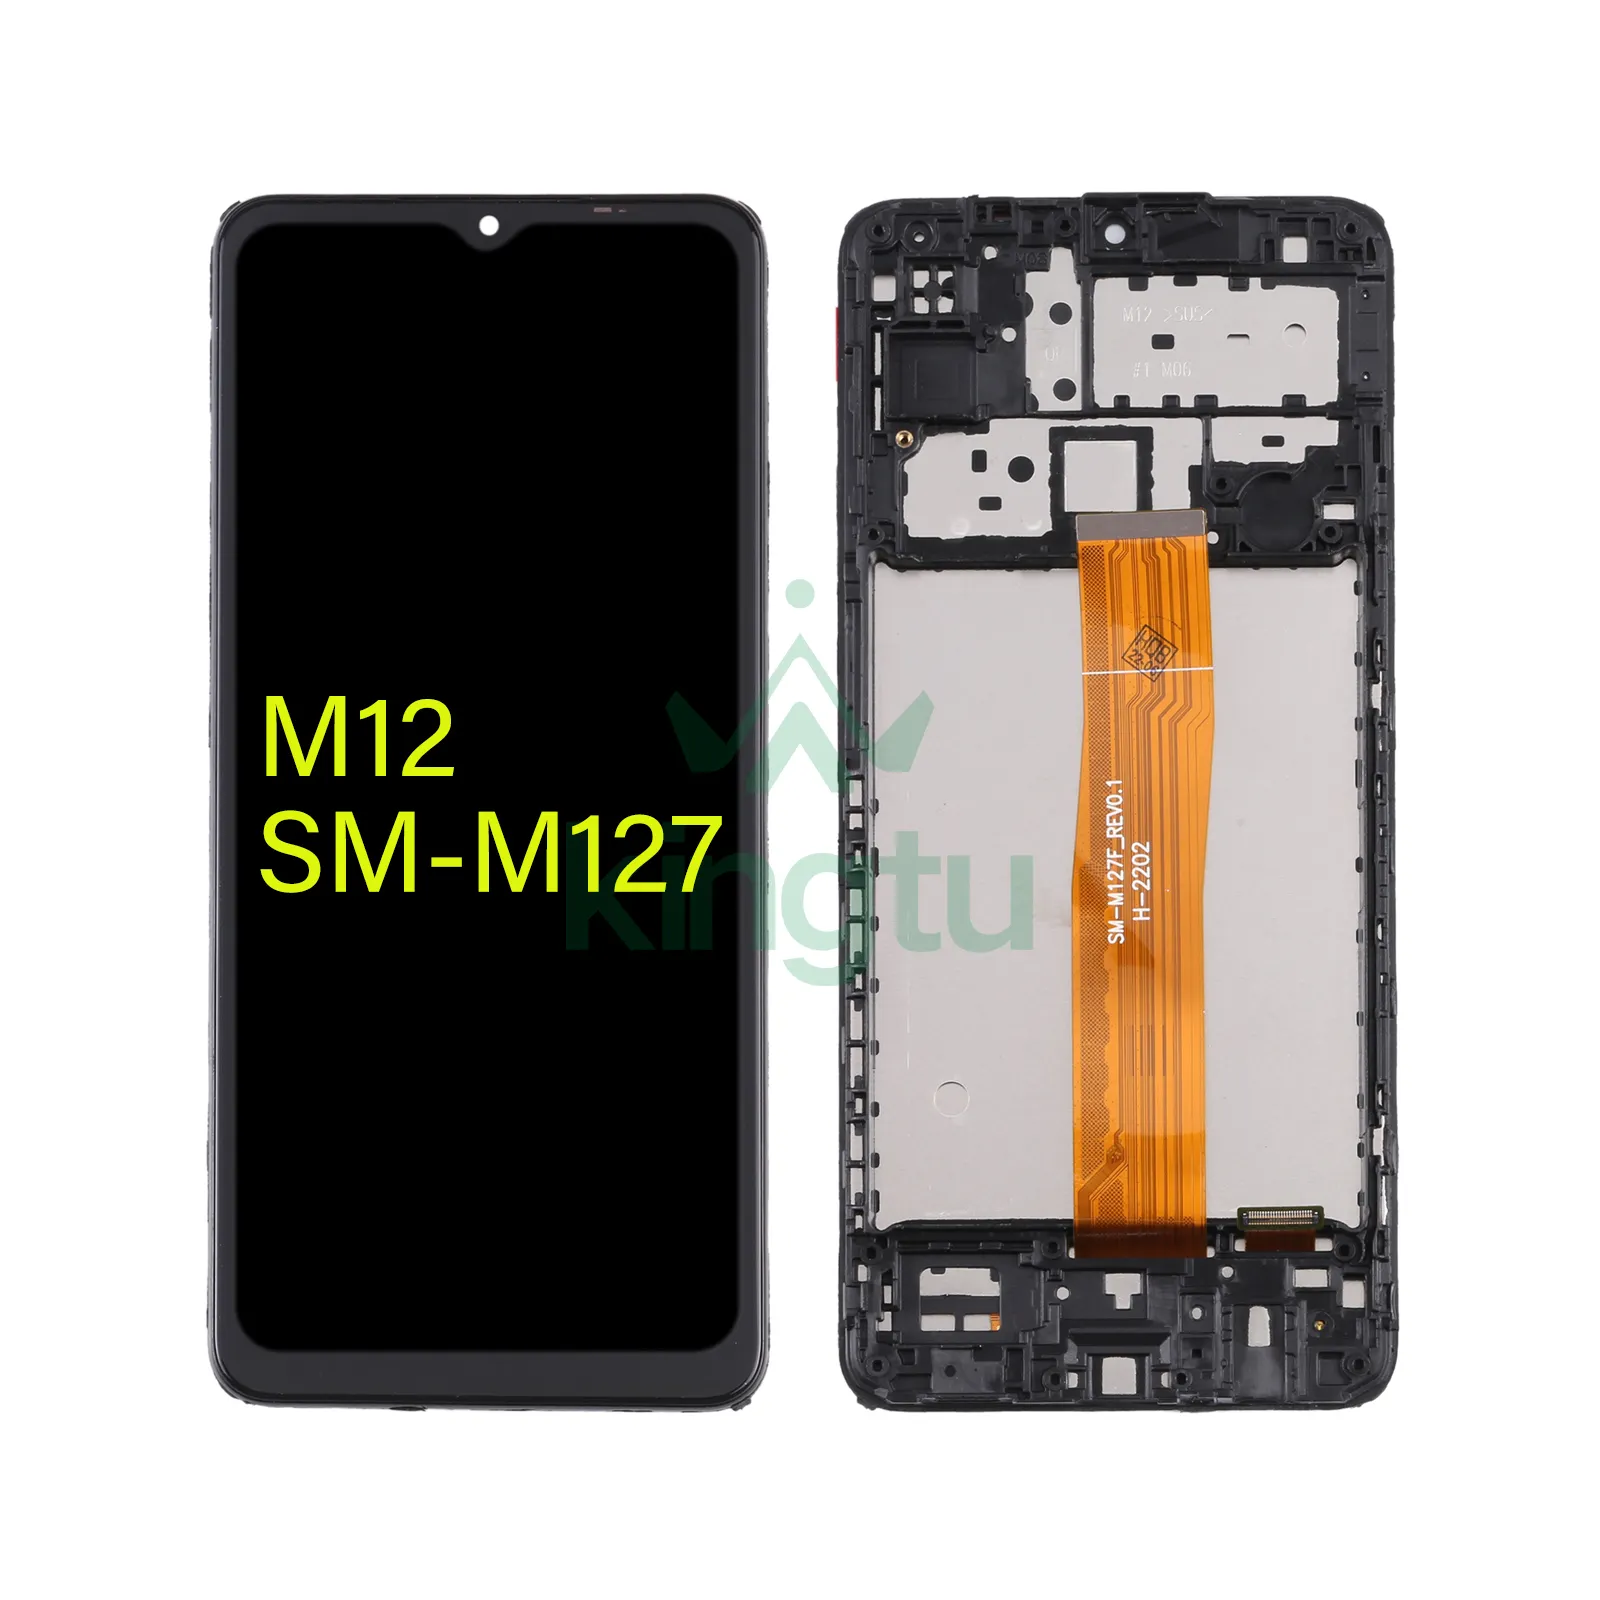 Pieza de repuesto para teléfono móvil, carcasa frontal, Marco LCD, placa biselada para Samsung Galaxy M12 SM-M127, accesorios para teléfono